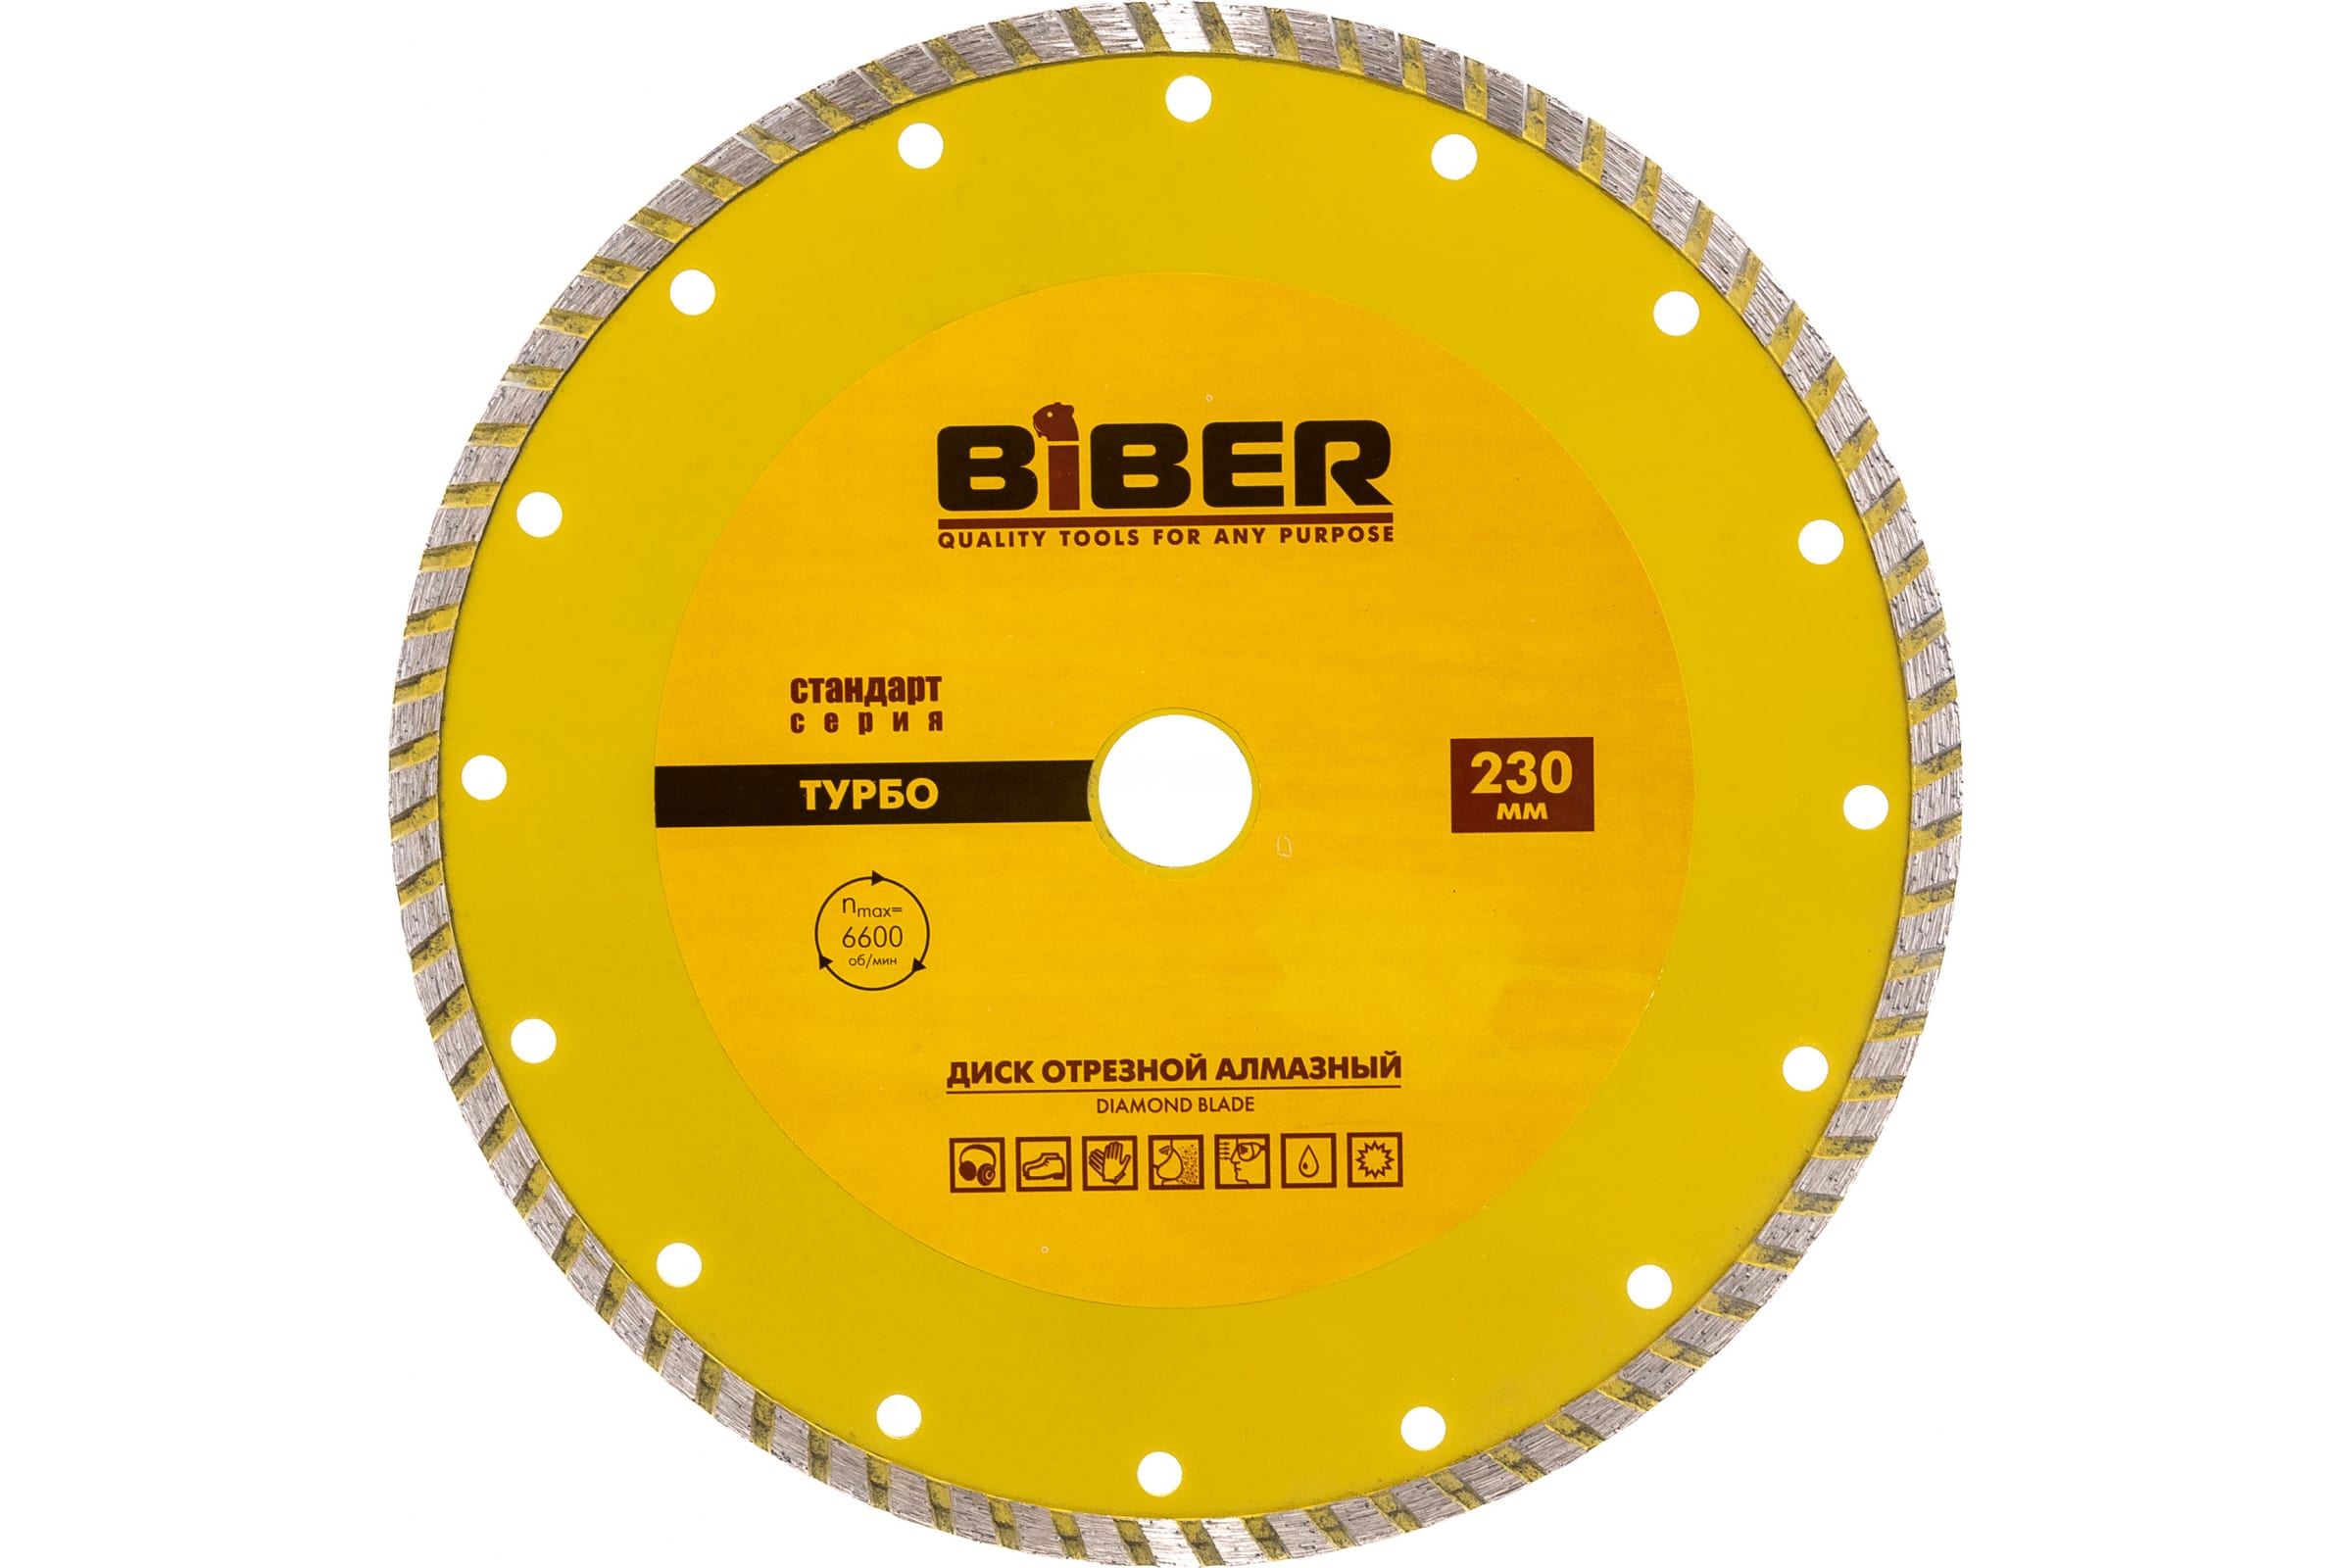 фото Biber диск алмазный турбо стандарт 230мм 70206 тов-039538